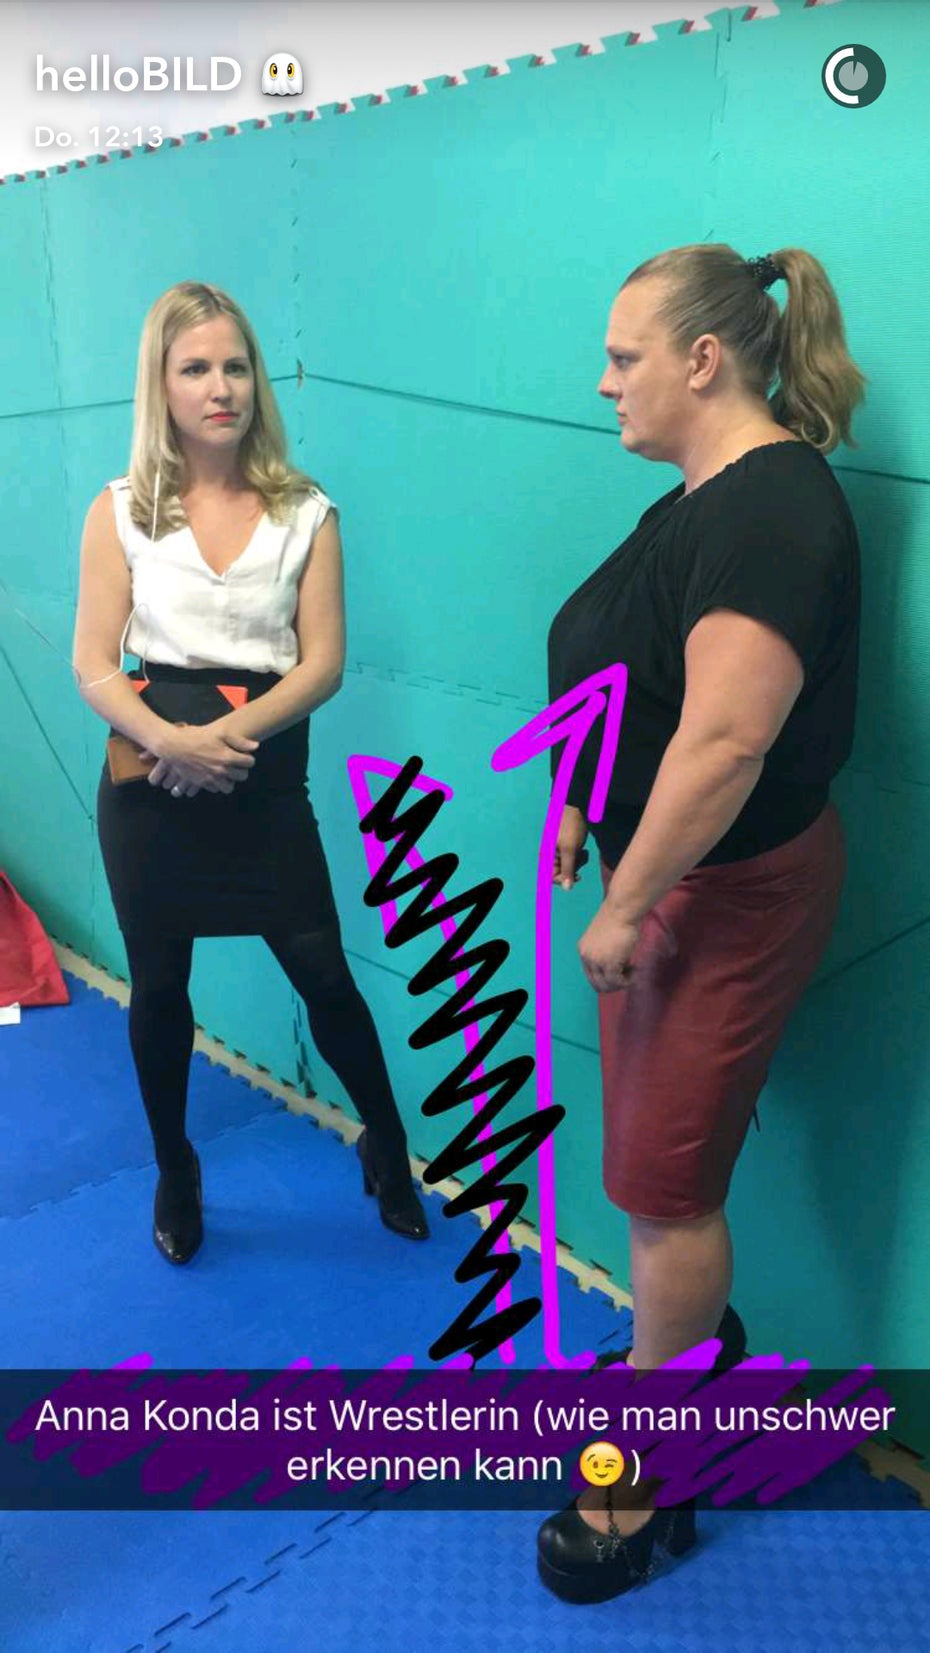 Snapchat-Reportage: Bild besucht die Wrestlerin Anna Konda. (Screenshot: t3n.de)